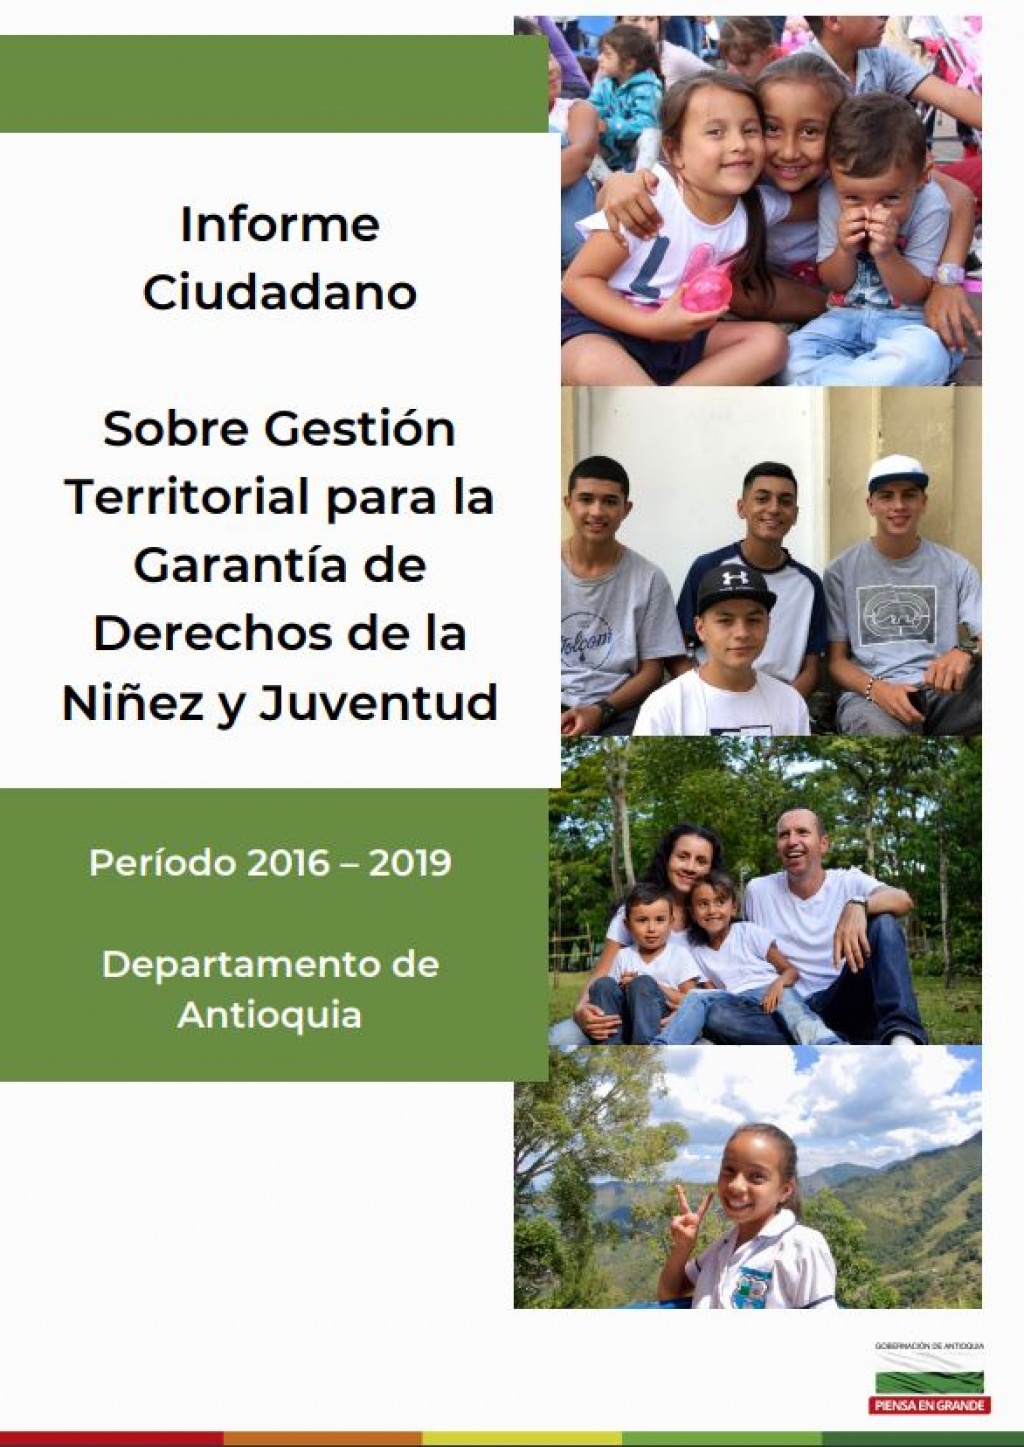 Informe ciudadano sobre gestión territorial para la garantía de derechos de la niñez y juventud del departamento de Antioquia 2016-2019